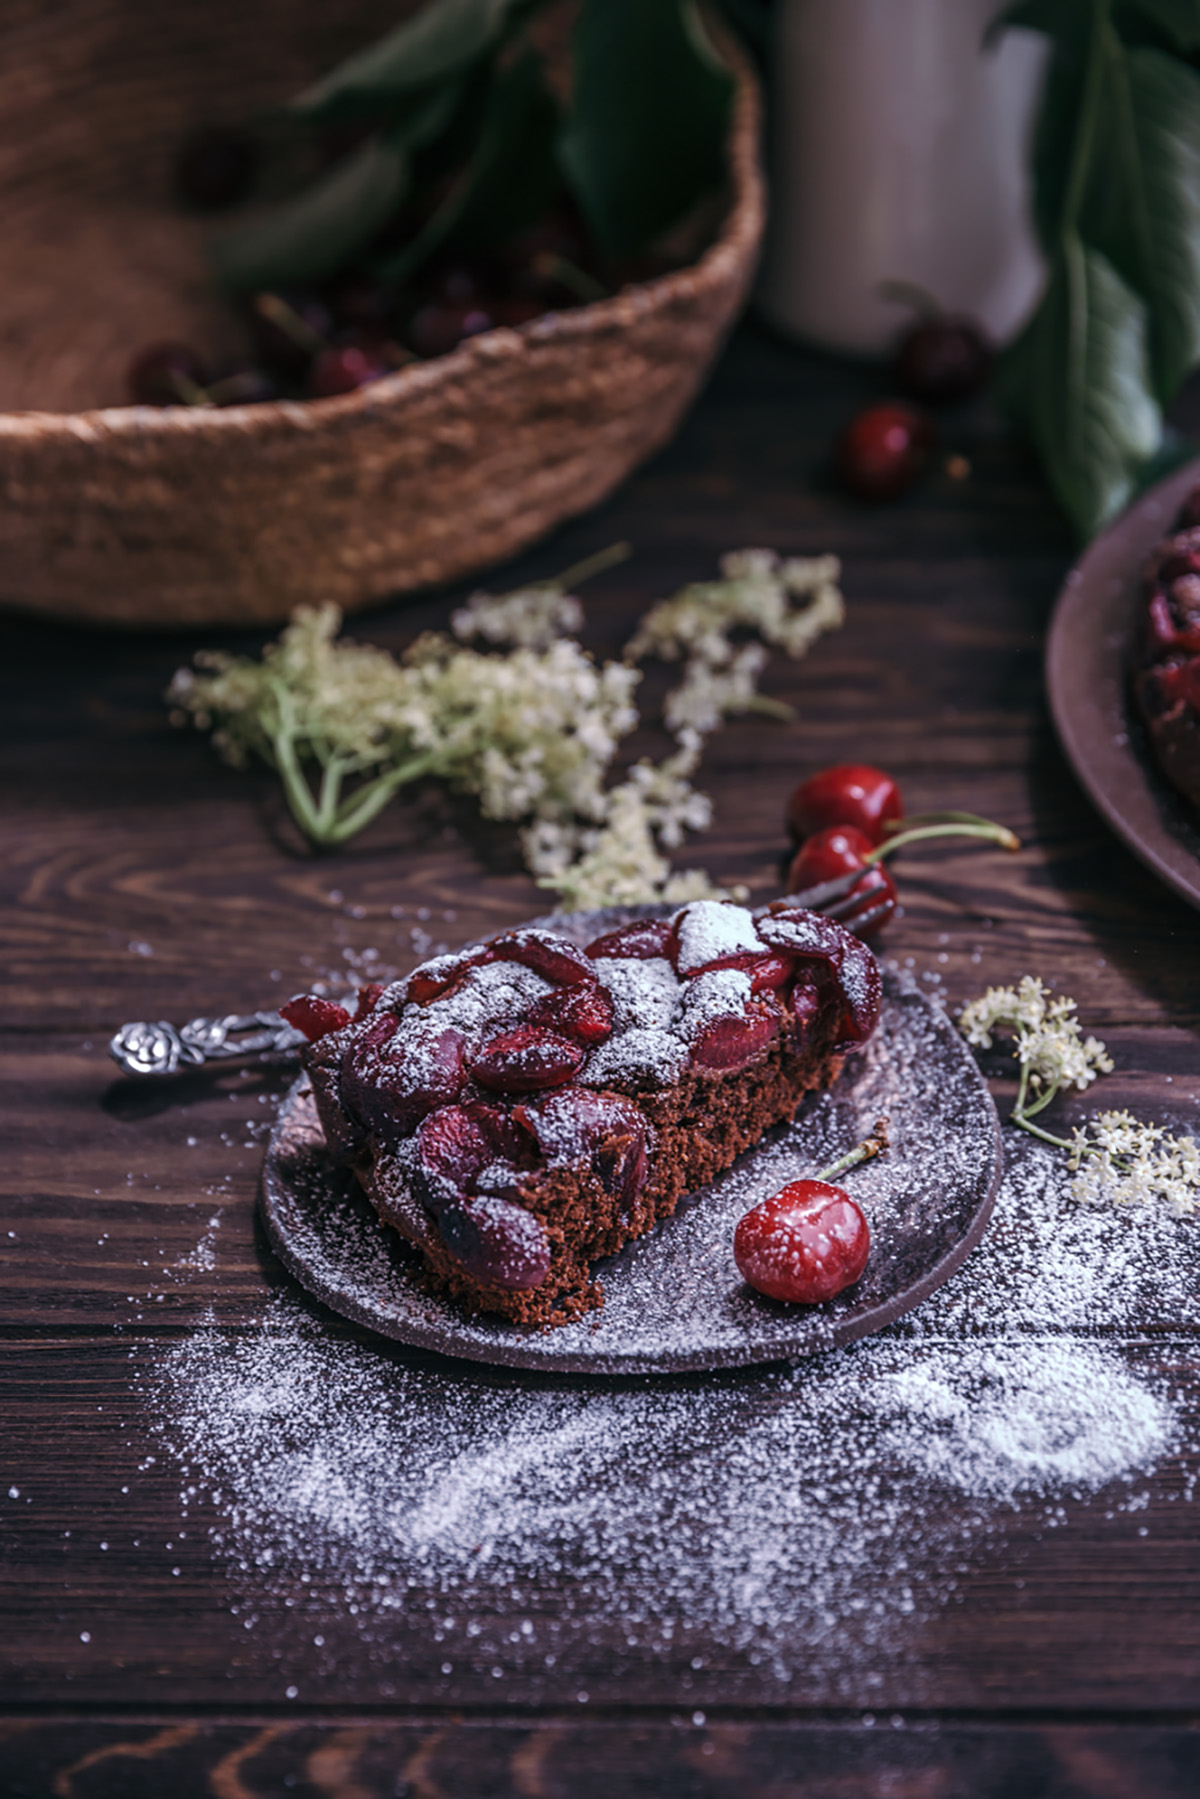 cherry chocolate cake (vegan)